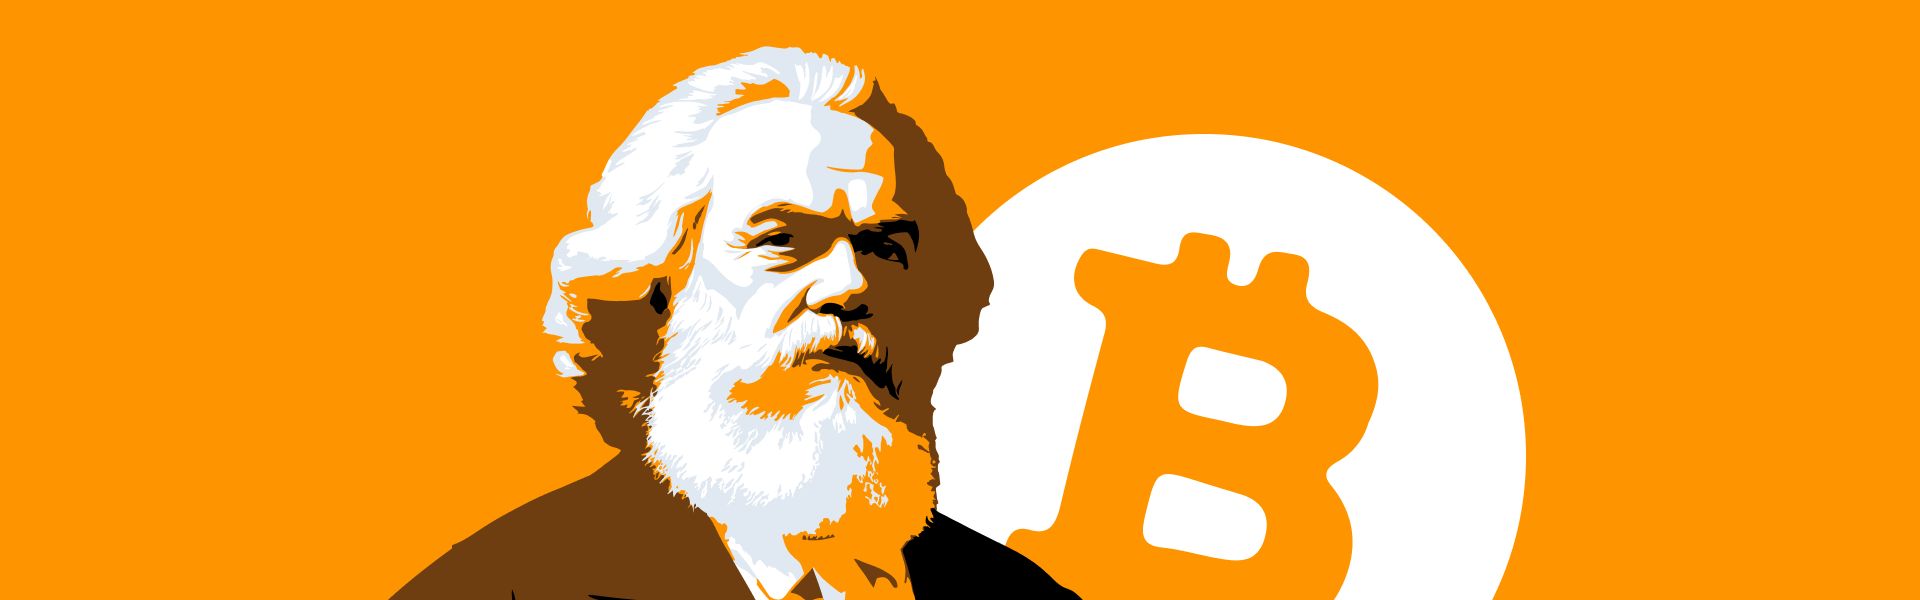 Біткоїн проти Маркса: дві суперницькі геополітичні теорії